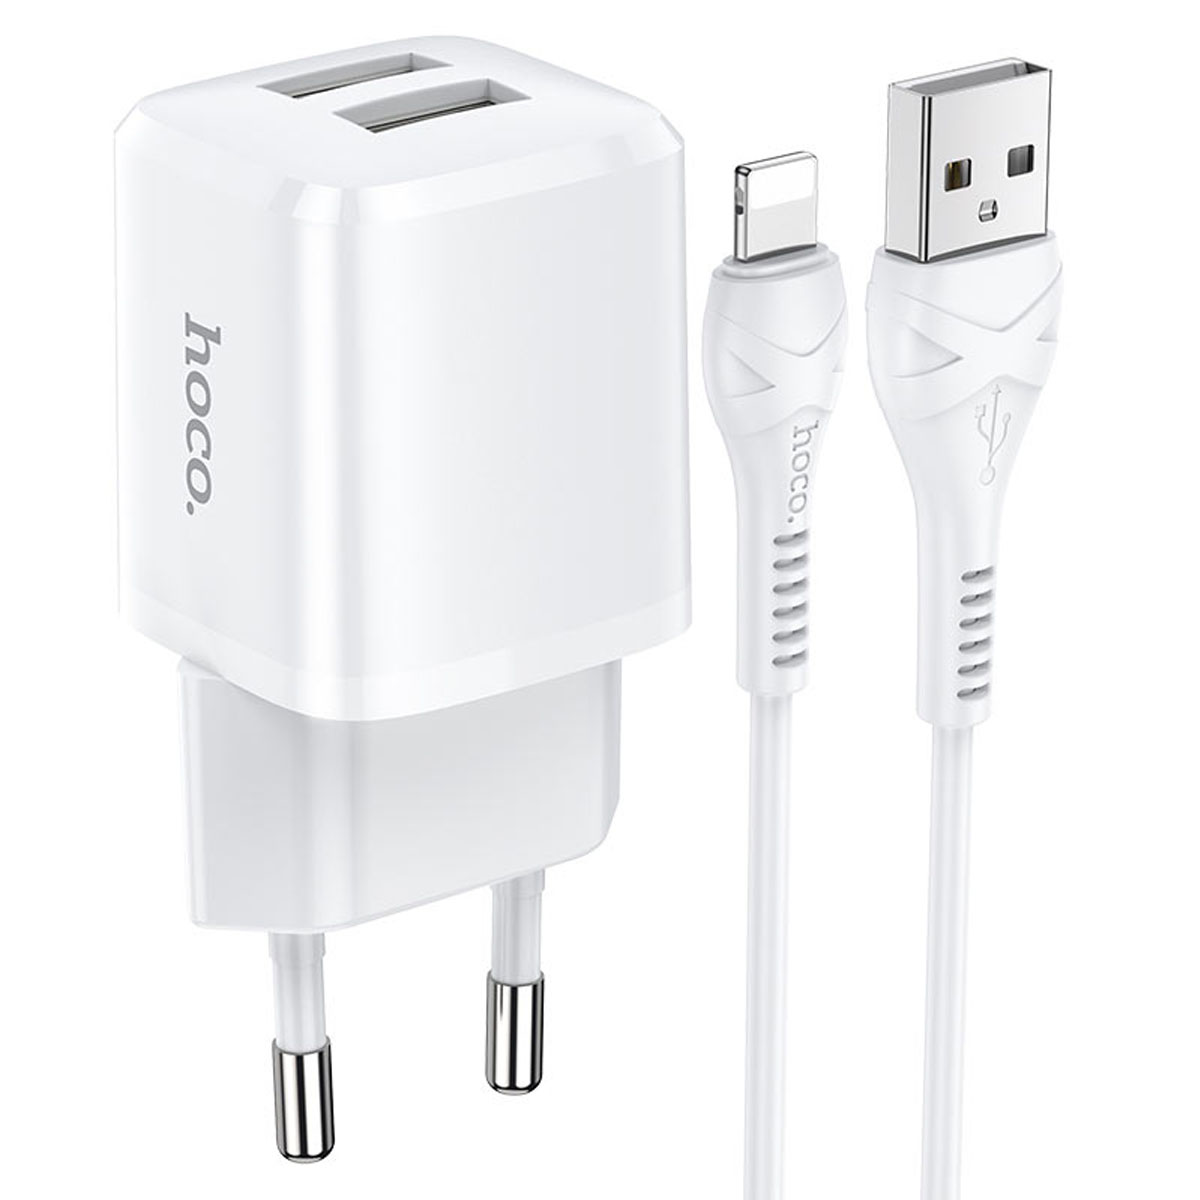 СЗУ (Сетевое зарядное устройство) HOCO N8 Briar с кабелем Lightning 8 pin, 2.4A, 2 USB, длина 1 метр, цвет белый